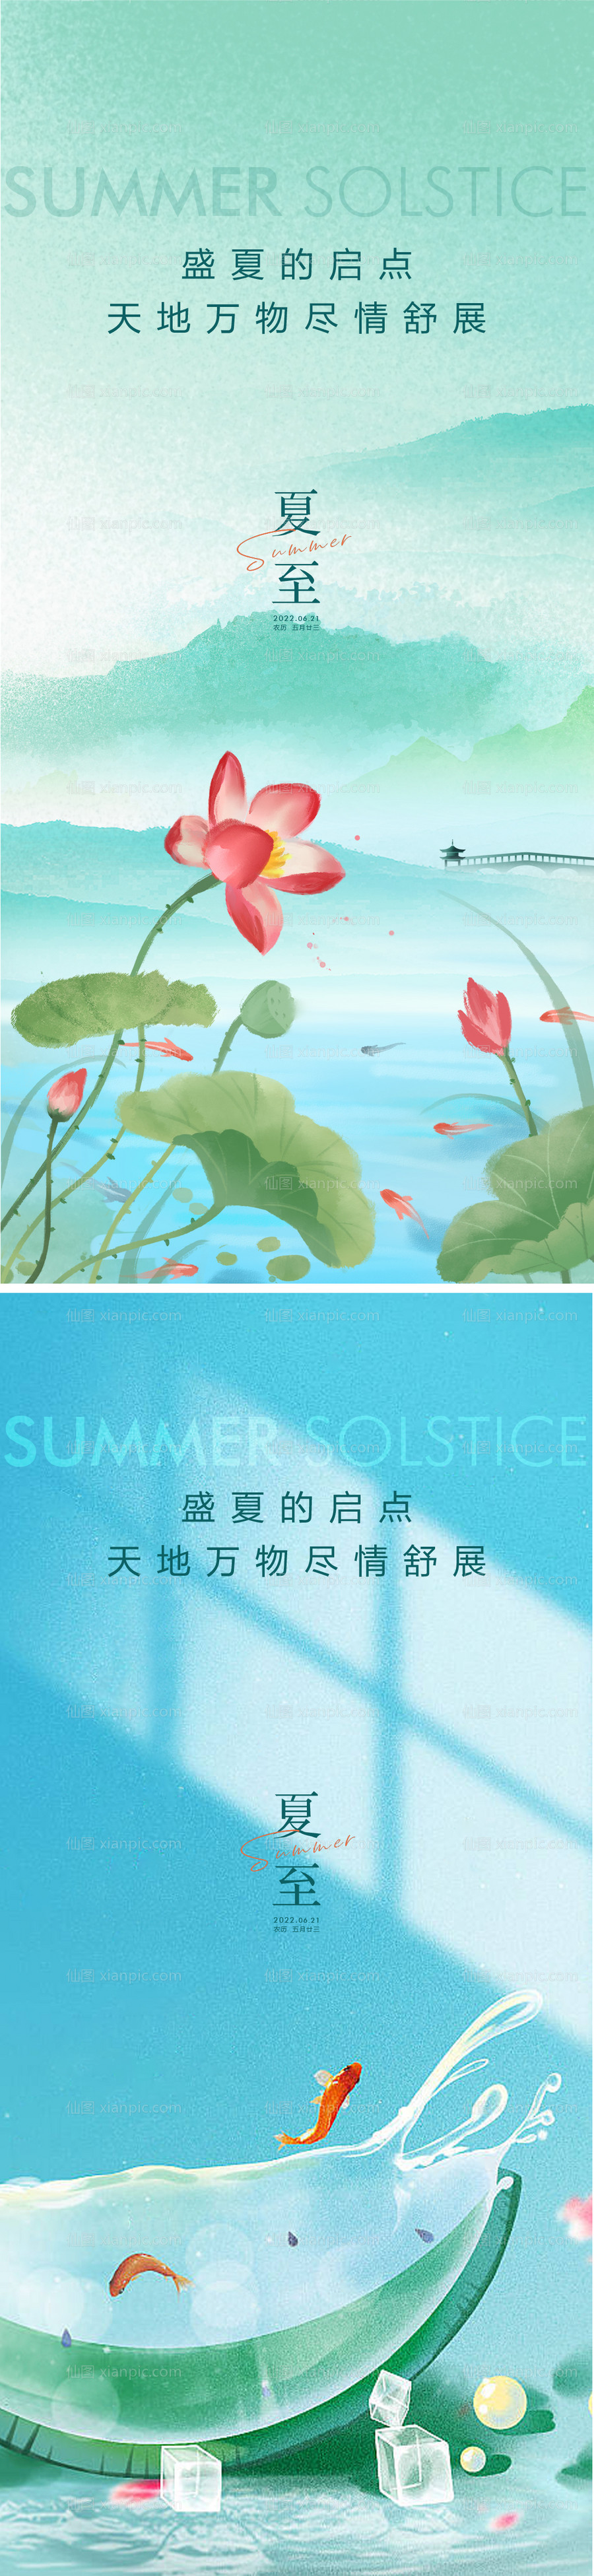 素材乐-夏至节气海报